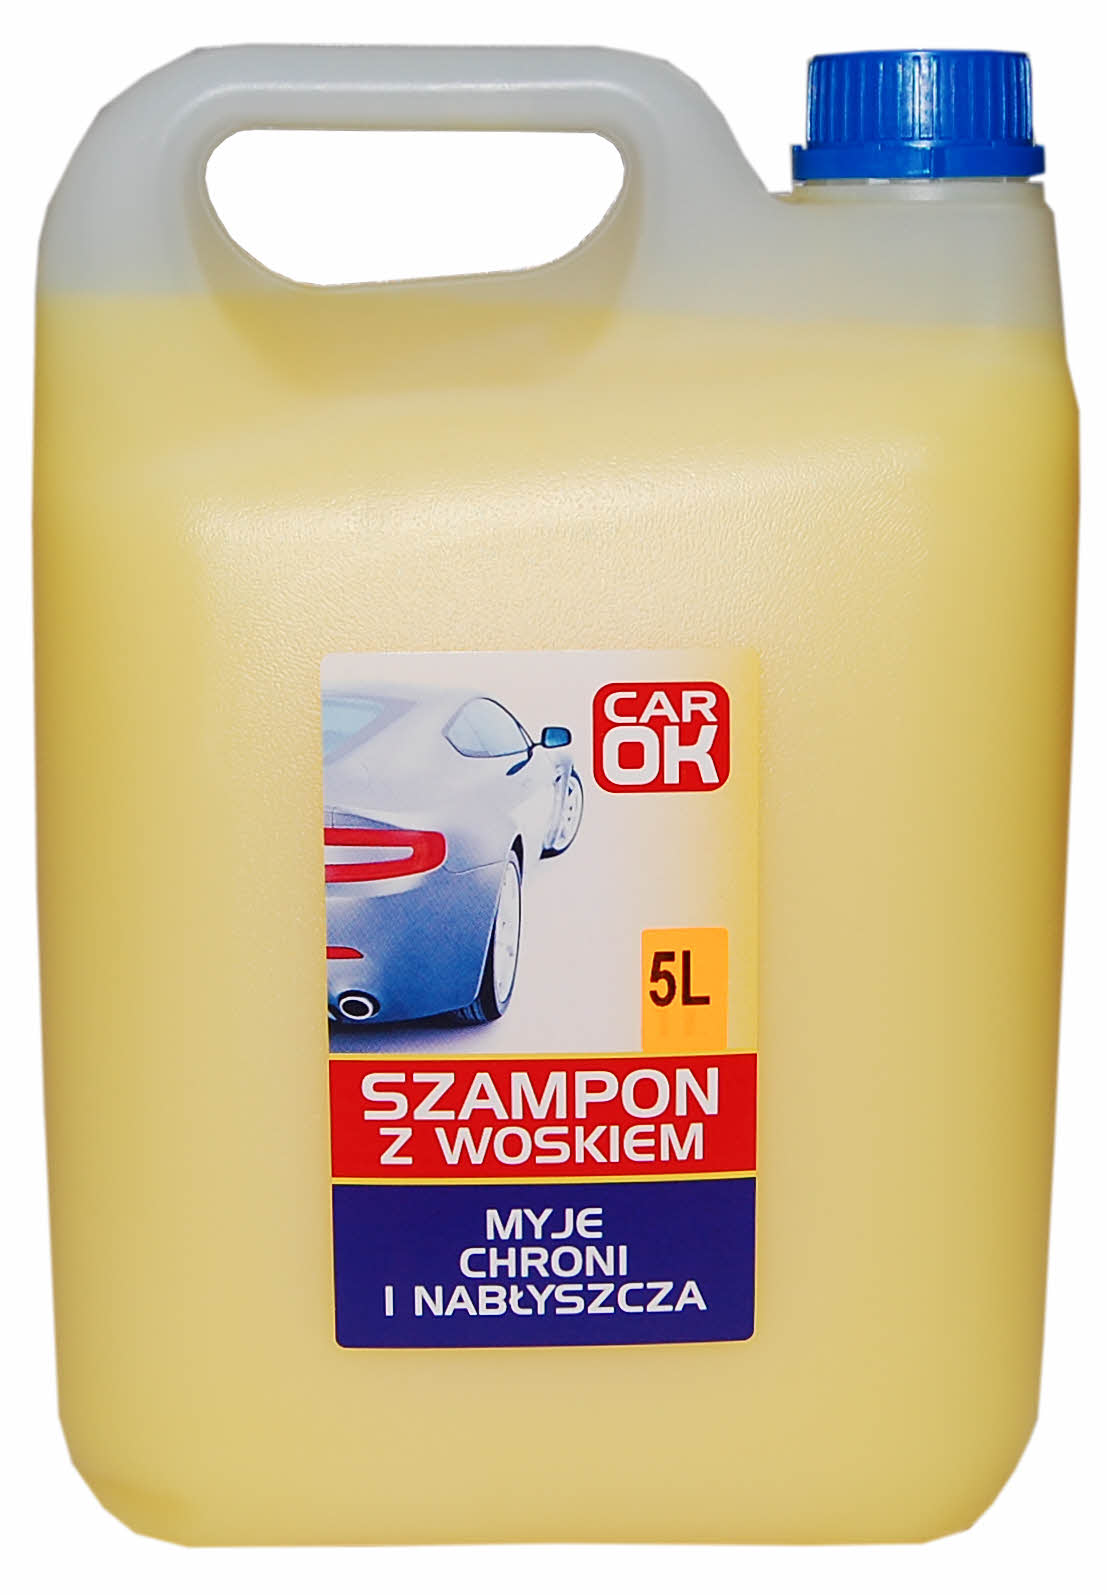 szampon z woskuem do k 5